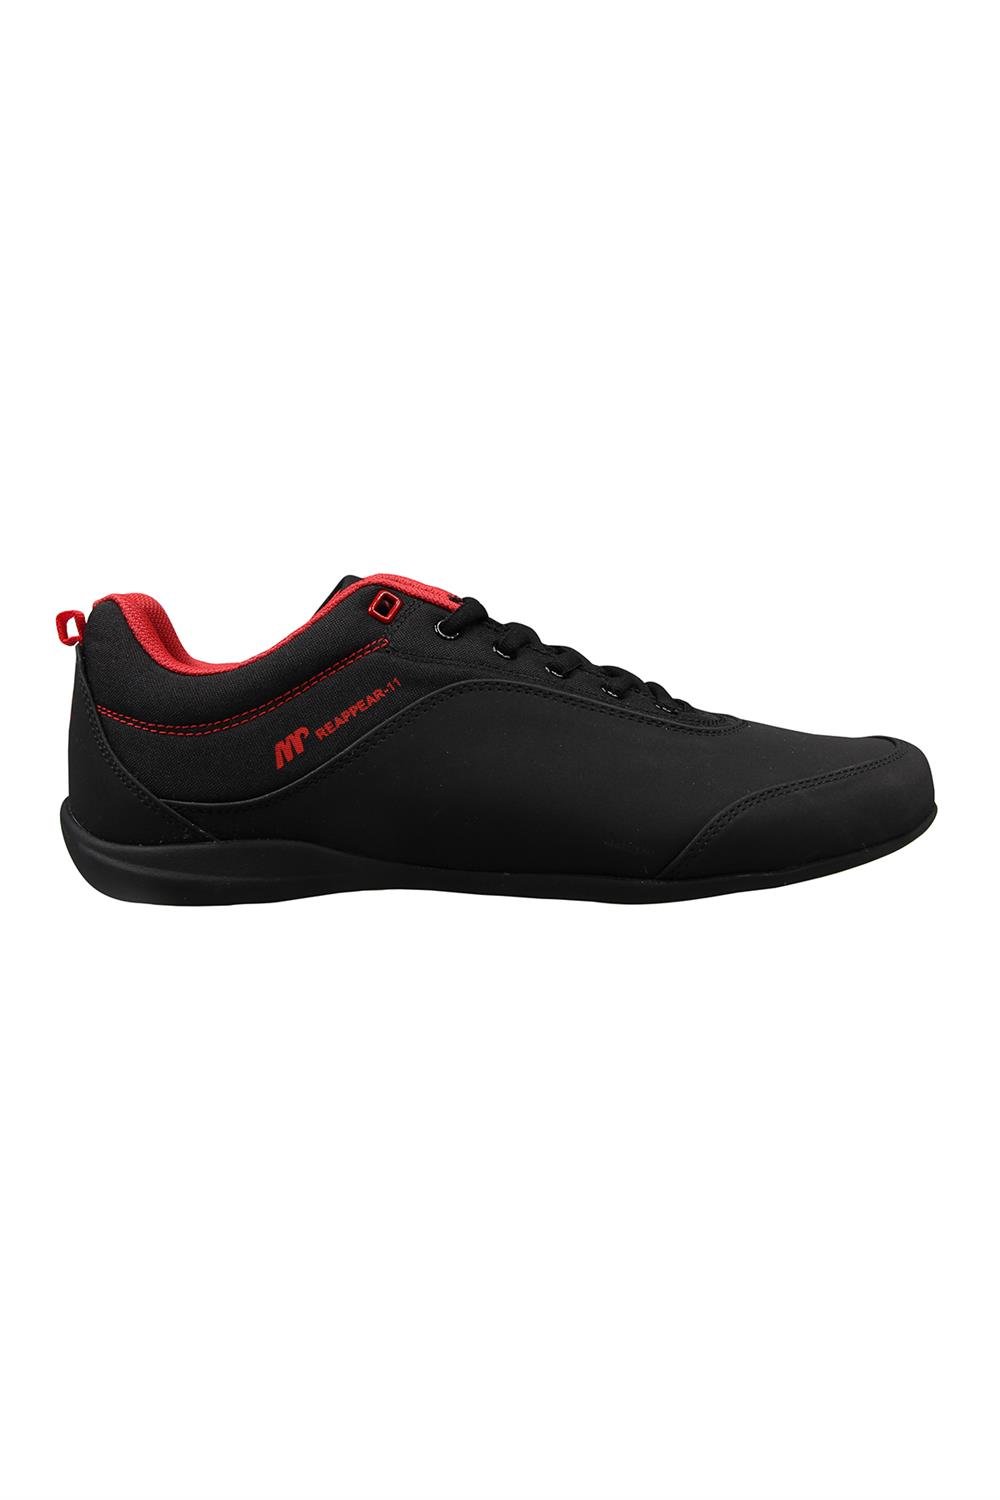 Erkek Siyah-kirmizi Spor Ayakkabı Modelleri ve Fiyatları